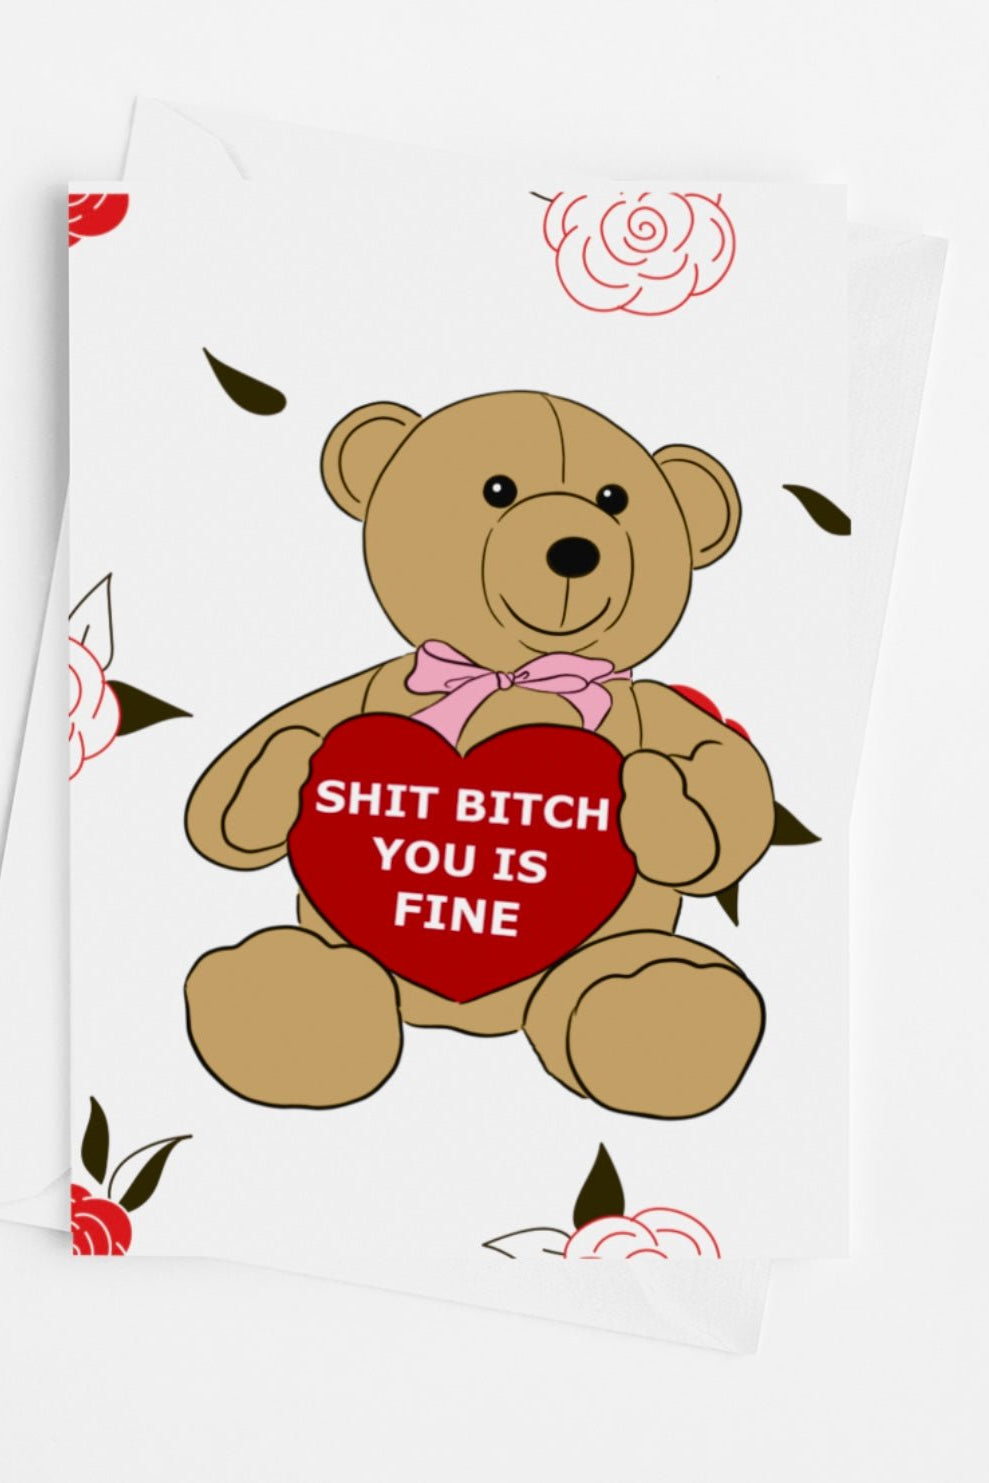 Shit Bitch You Is Fine Greeting Card - UntamedEgo LLC.